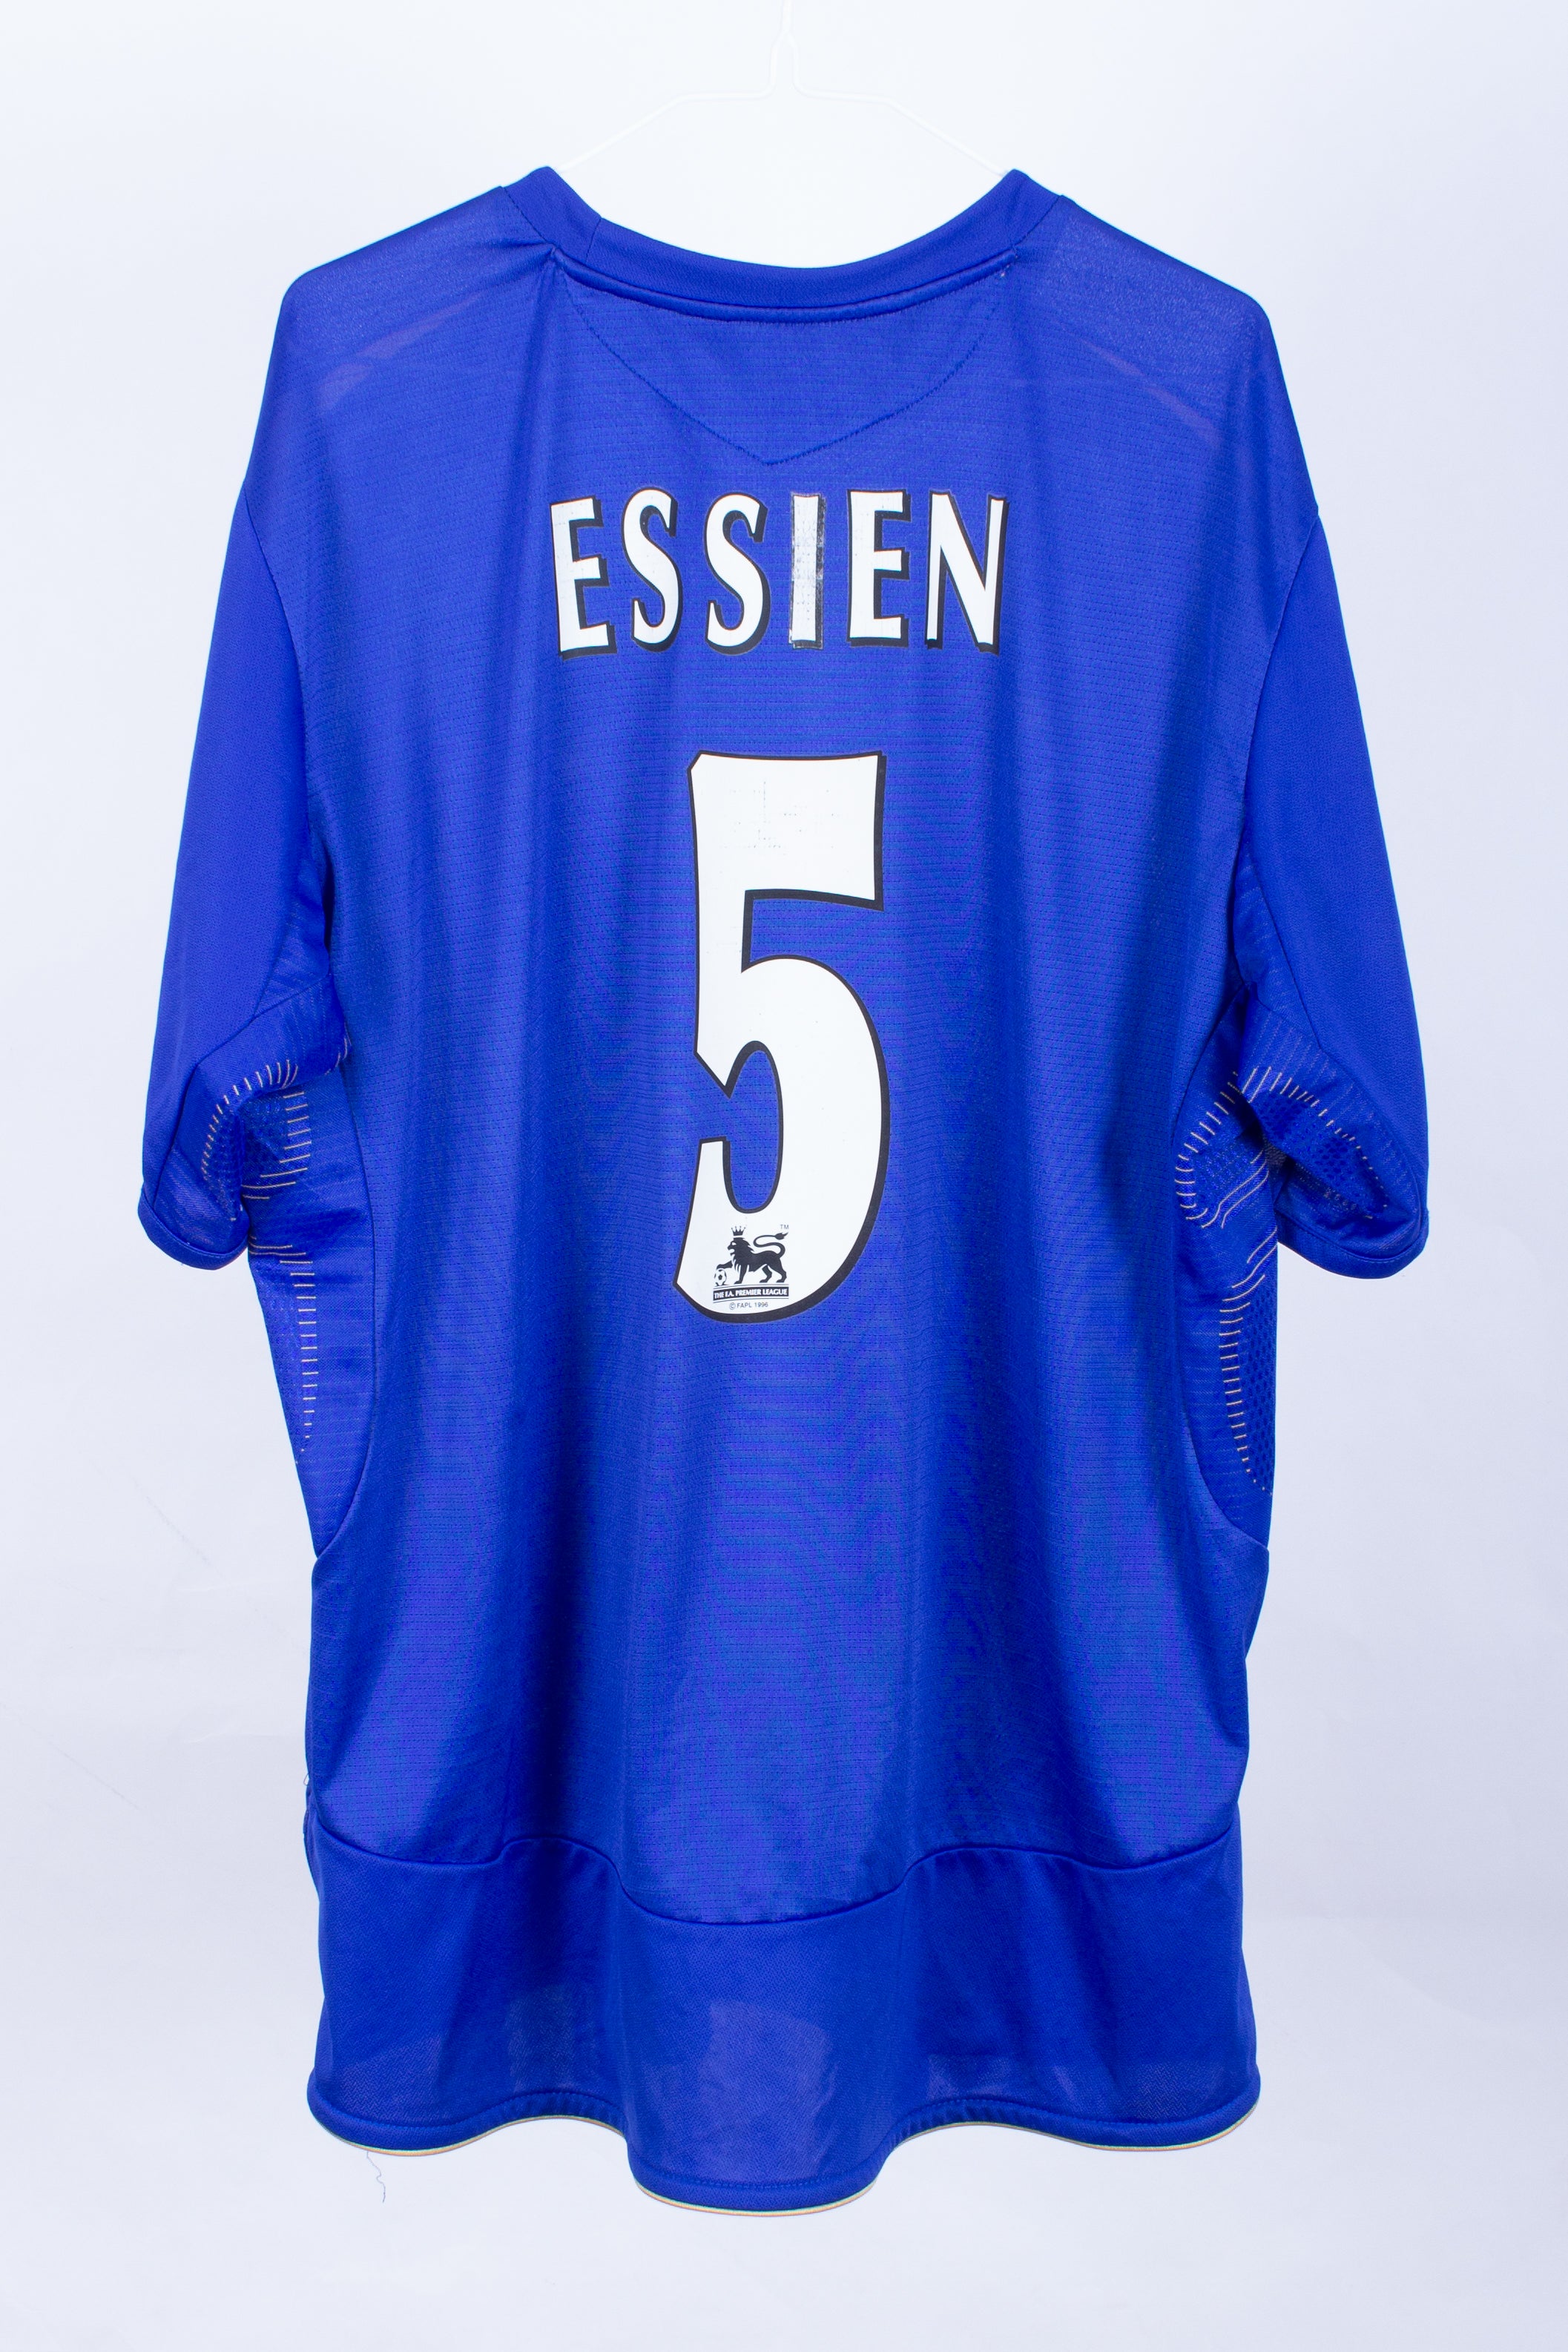 Chelsea 2005/06 Home Shirt (Essien #5) (XL)